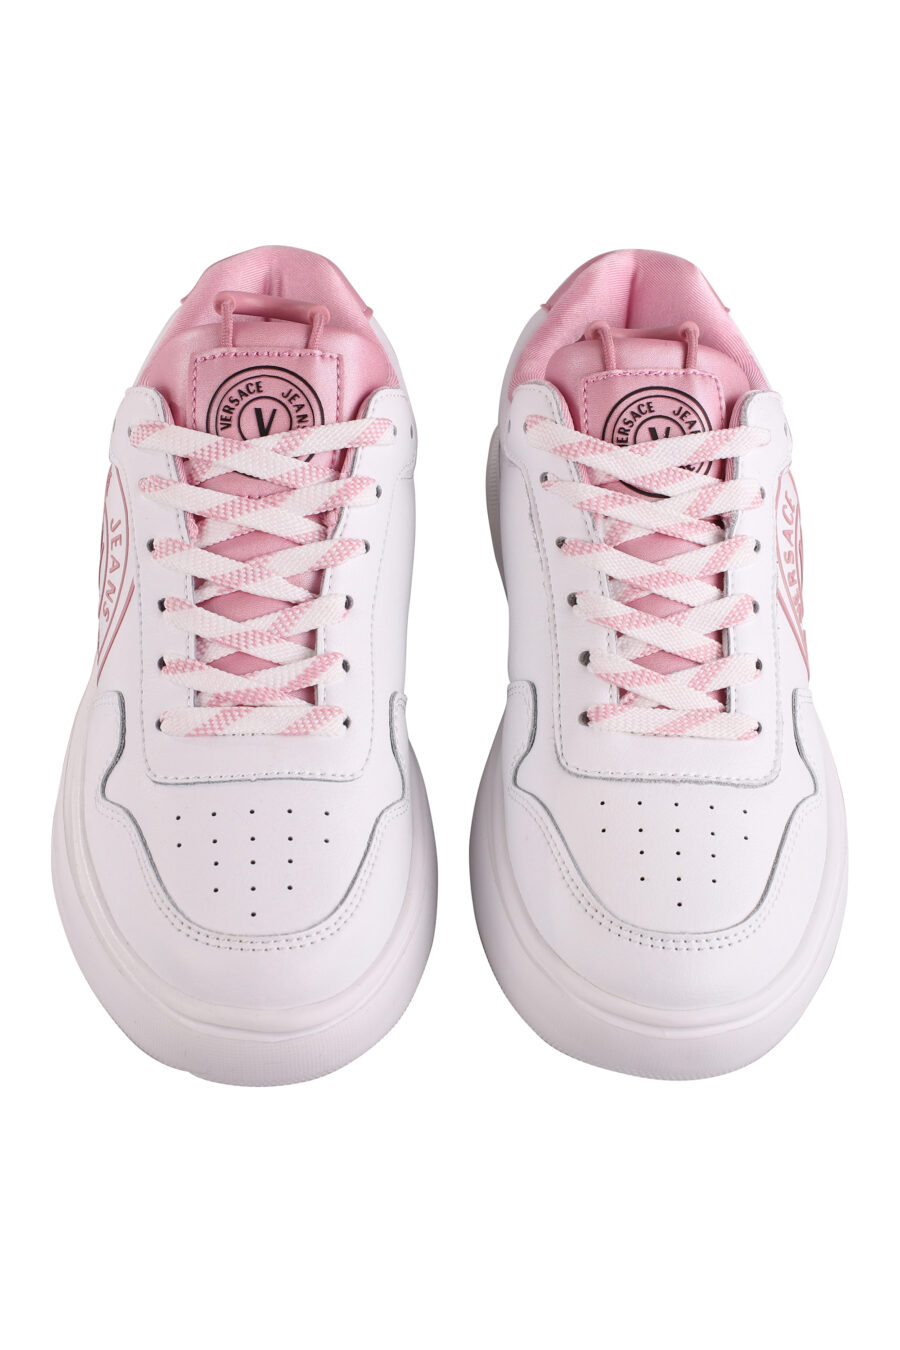 Zapatillas blancas con detalles y logo rosa - IMG 9096